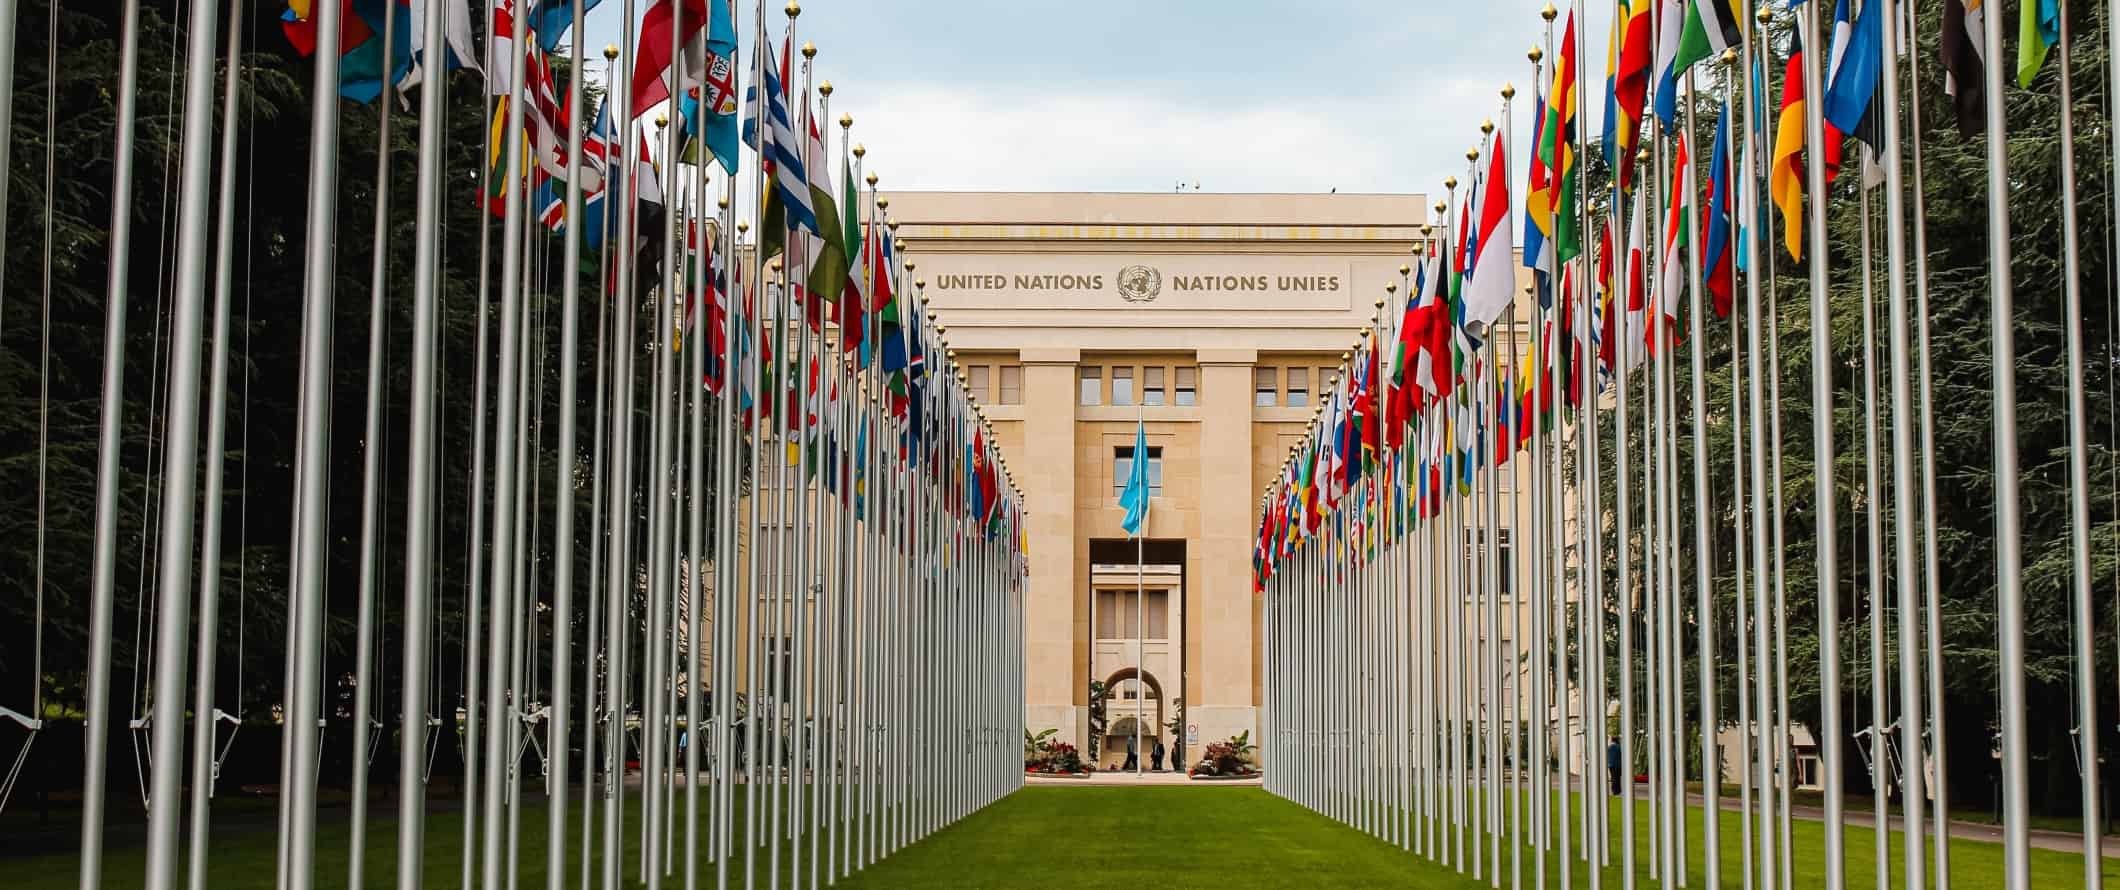 O prédio das Nações Unidas com duas fileiras de bandeiras de diferentes países do mundo à sua frente em Genebra, Suíça